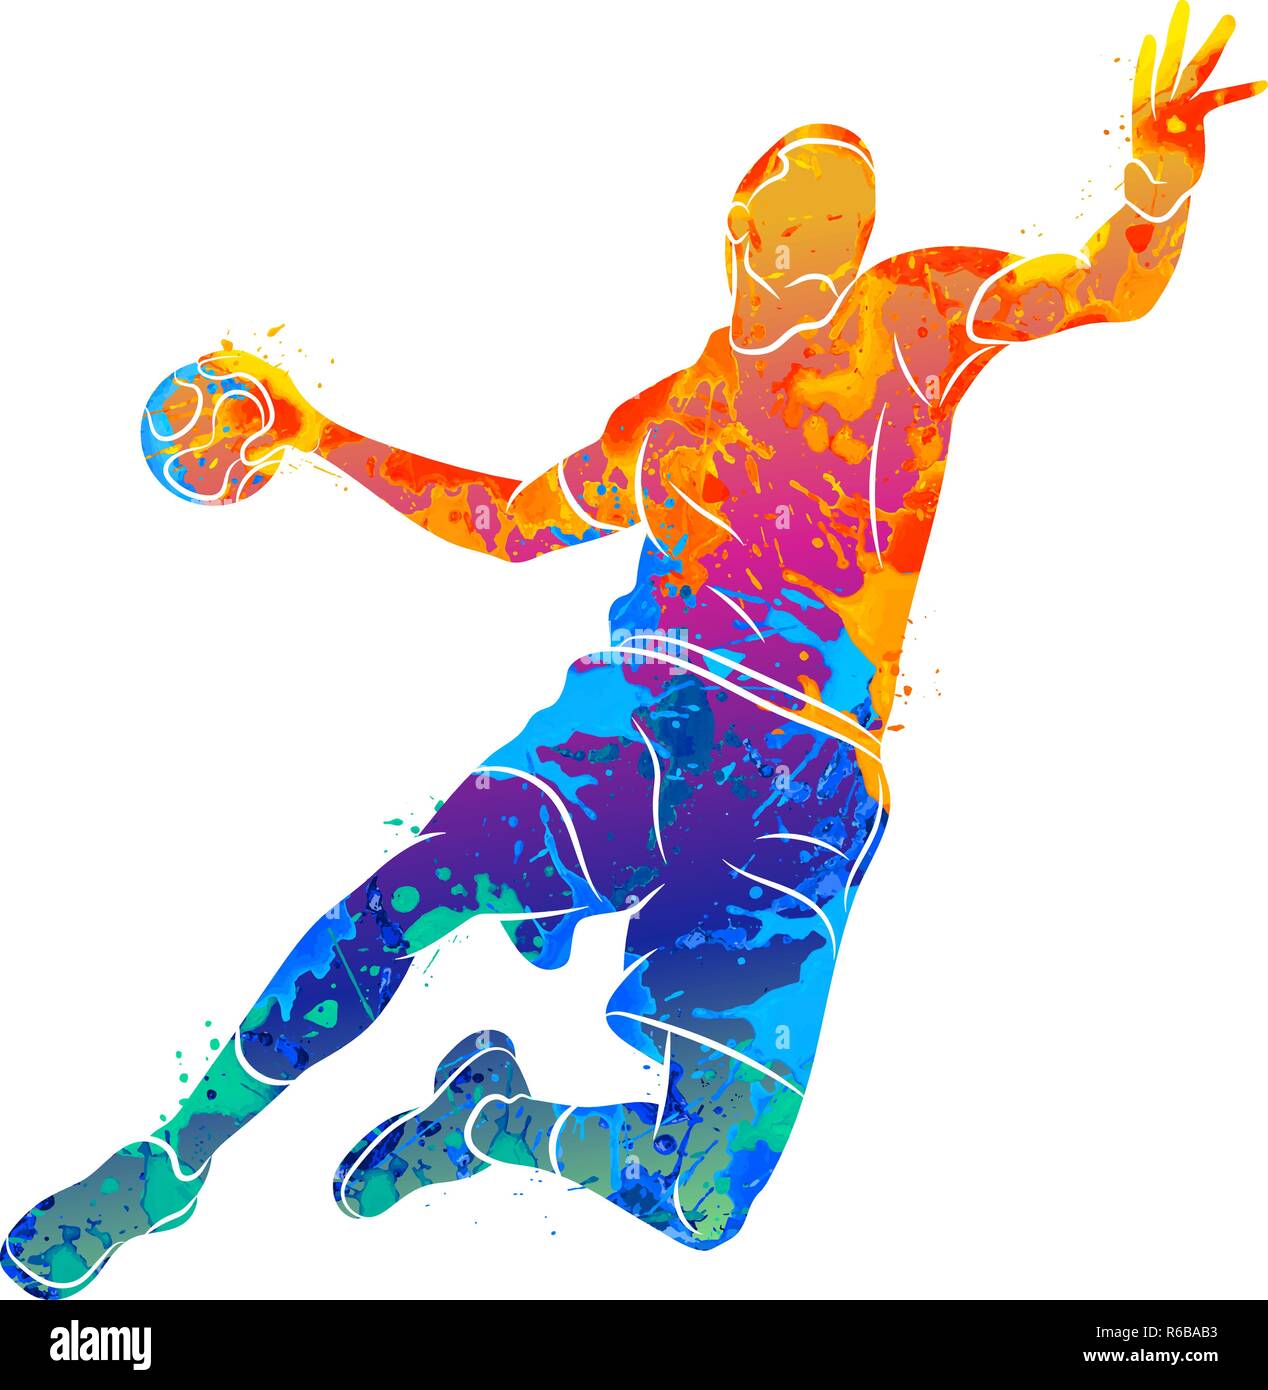 Joueur de handball résumé avec la balle de saut de splash d'aquarelles  Image Vectorielle Stock - Alamy